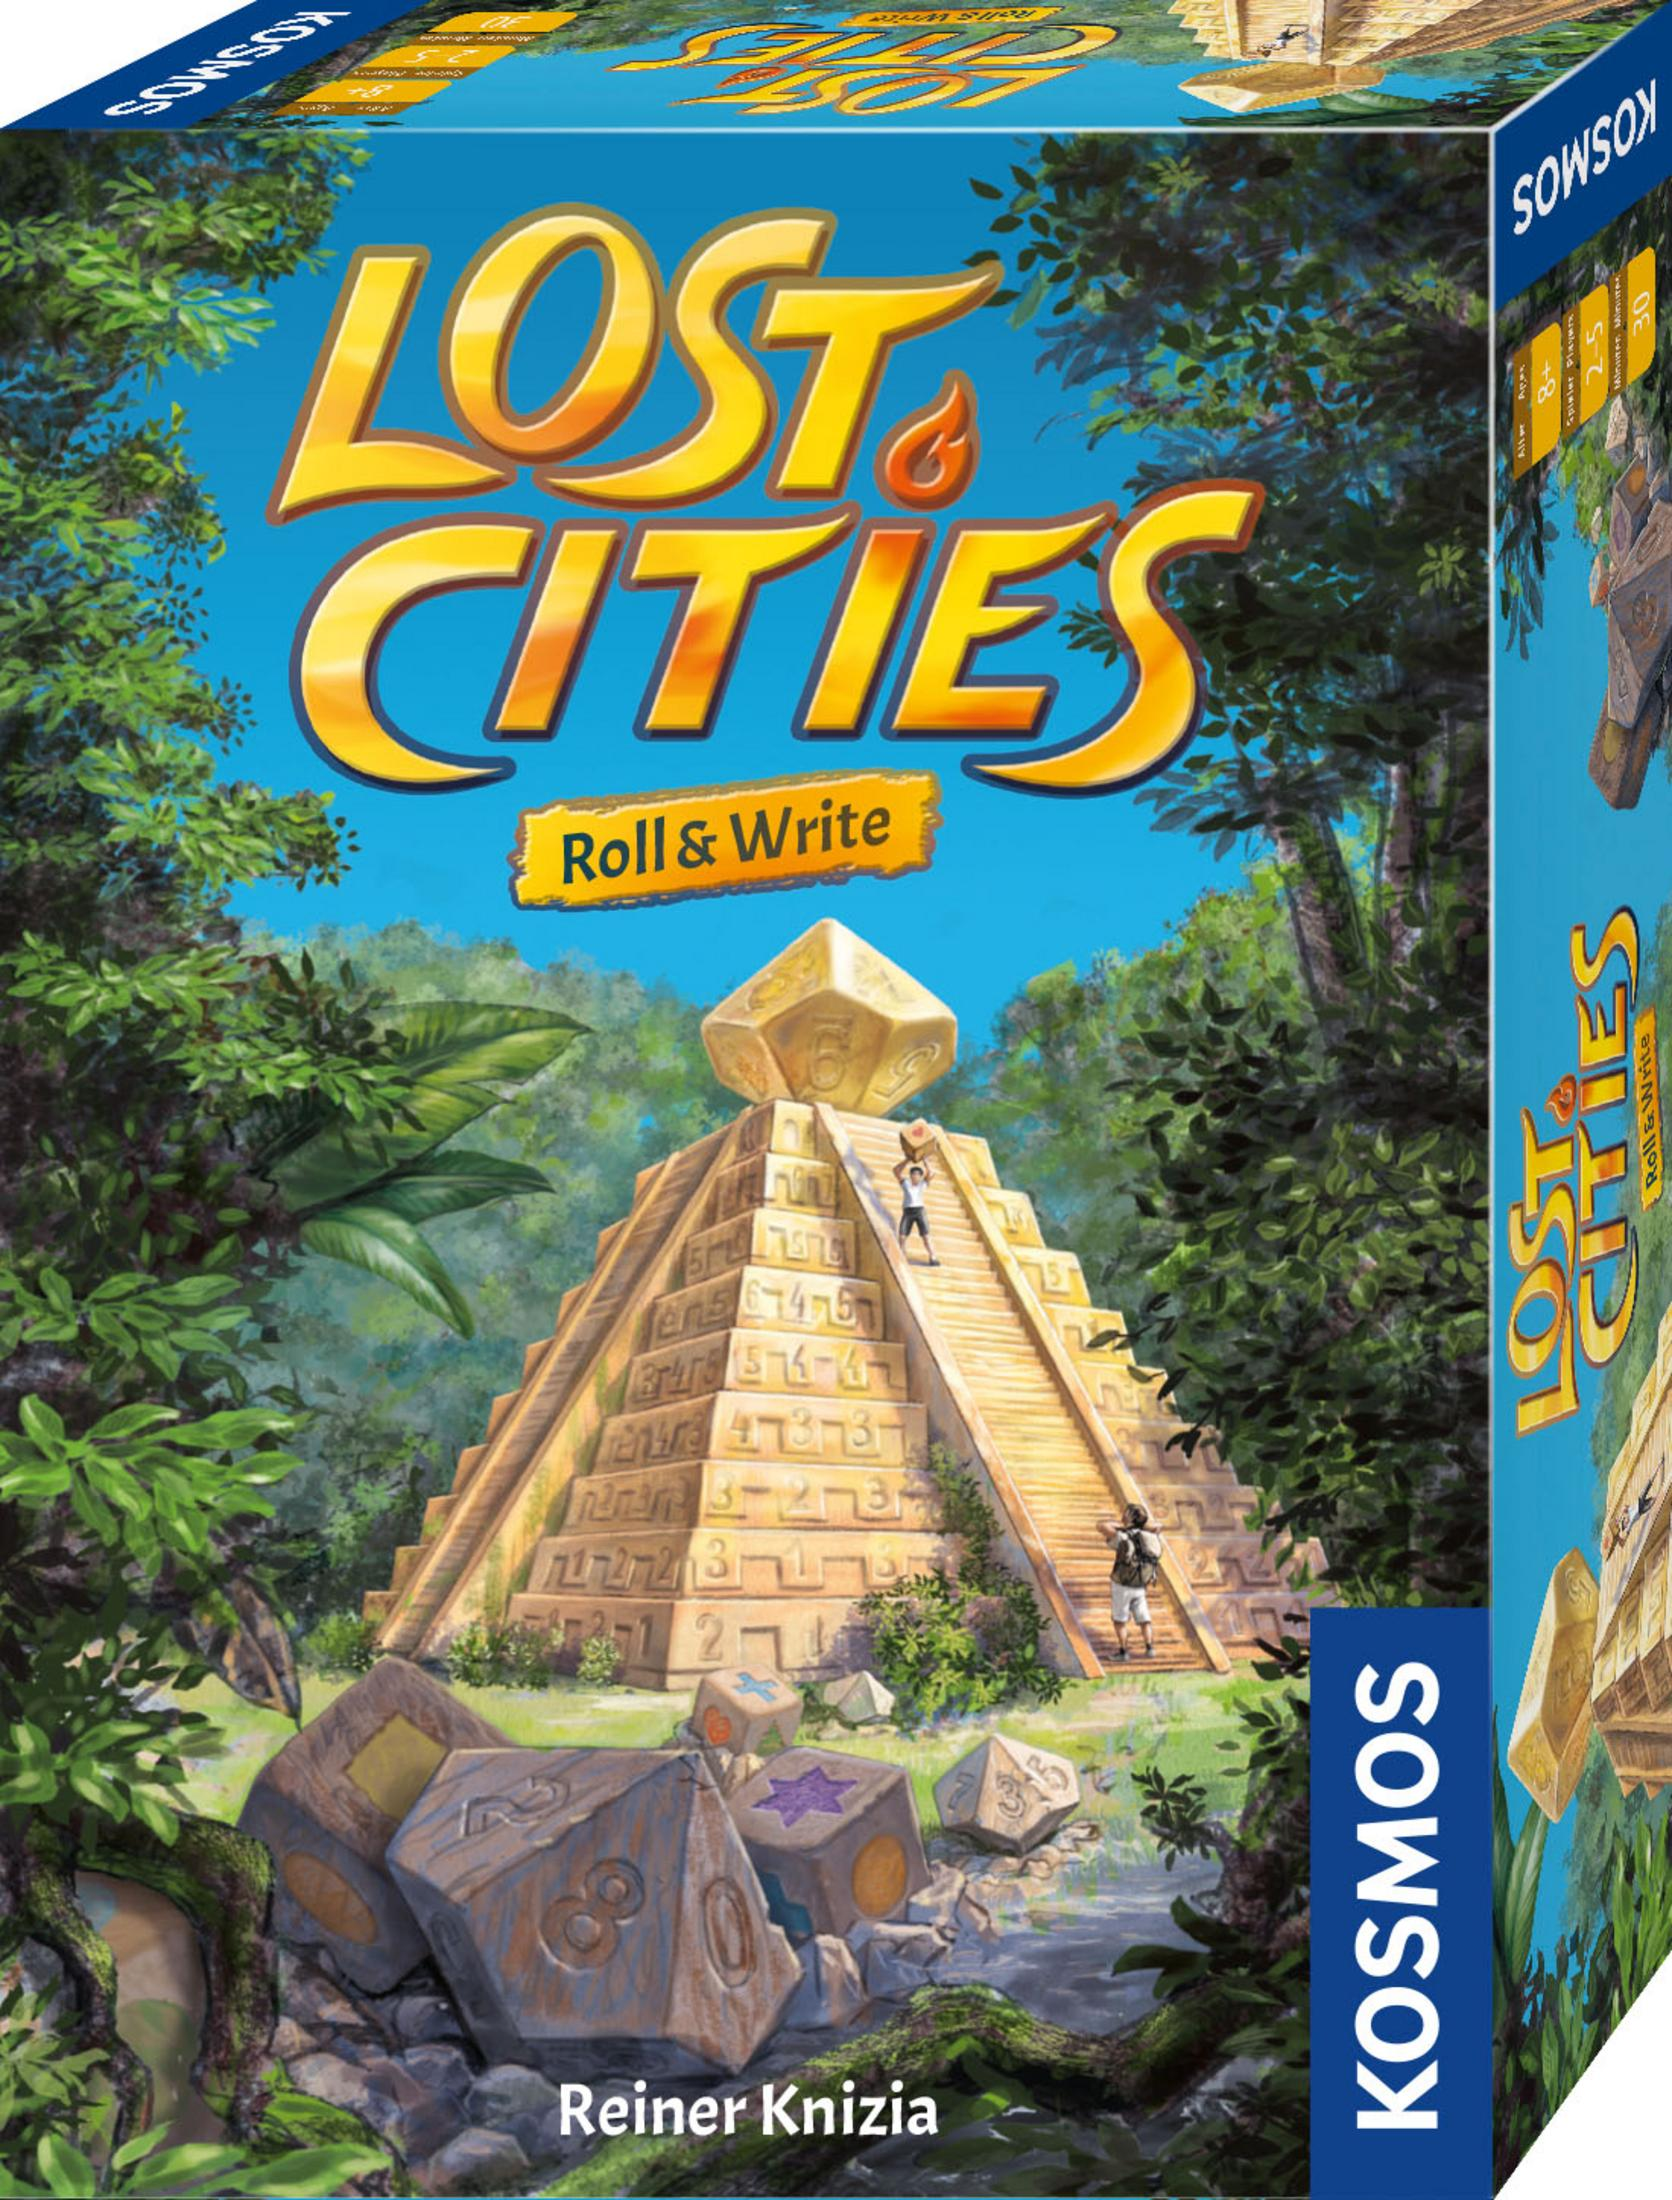 CITIES-ROLL 680589 KOSMOS WRITE LOST & Würfelspiel